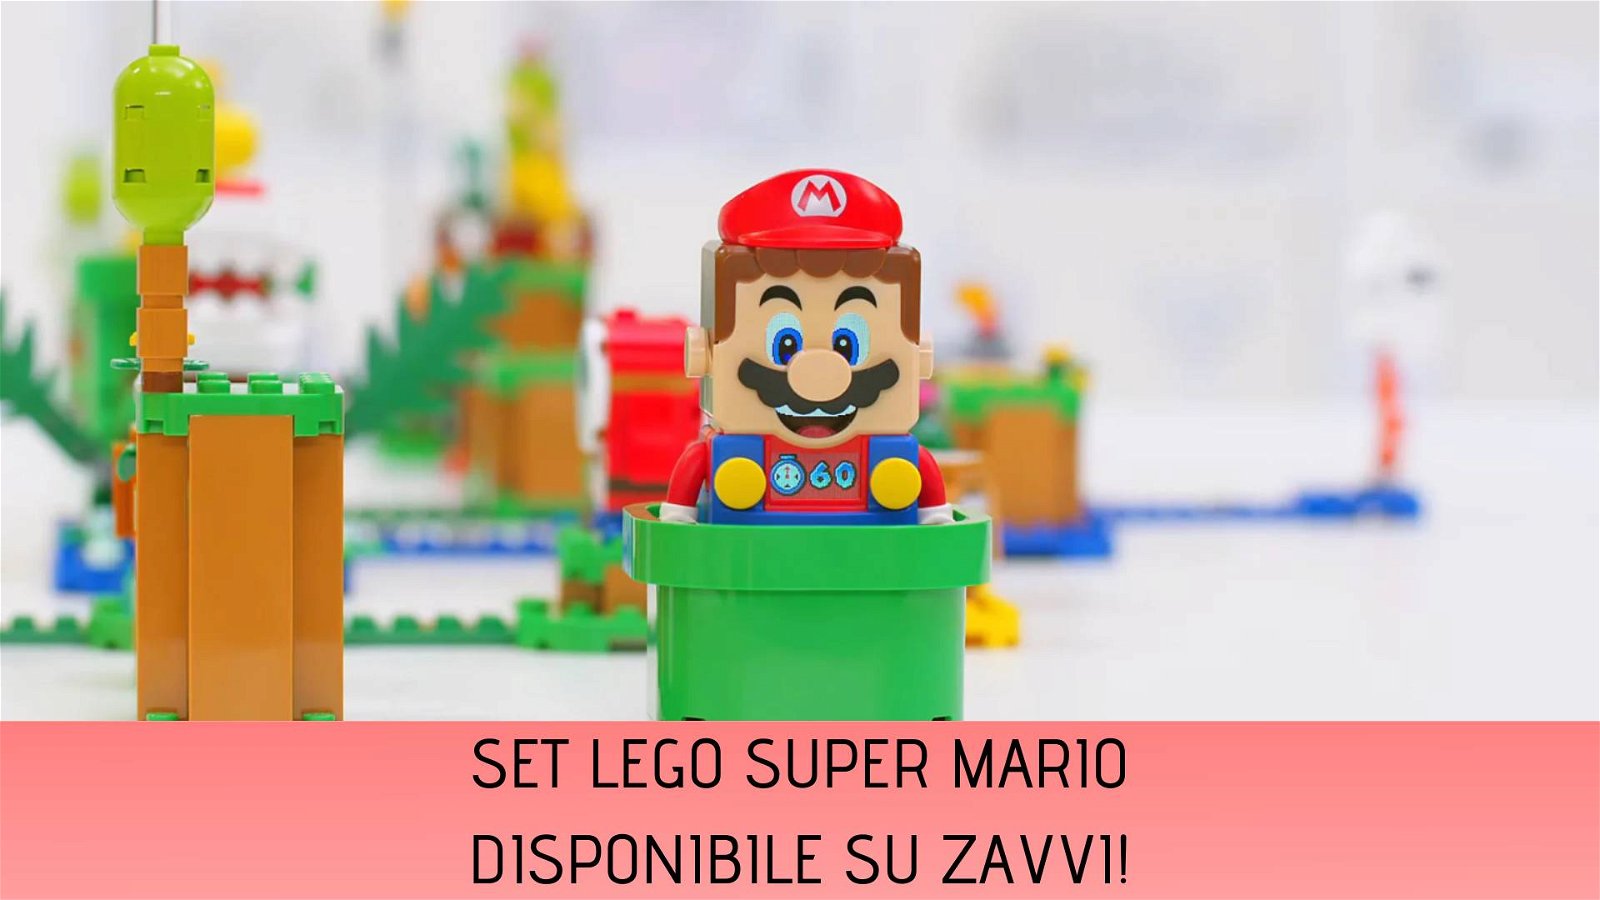 Immagine di LEGO Super Mario con pack espansione in regalo disponibile su Zavvi